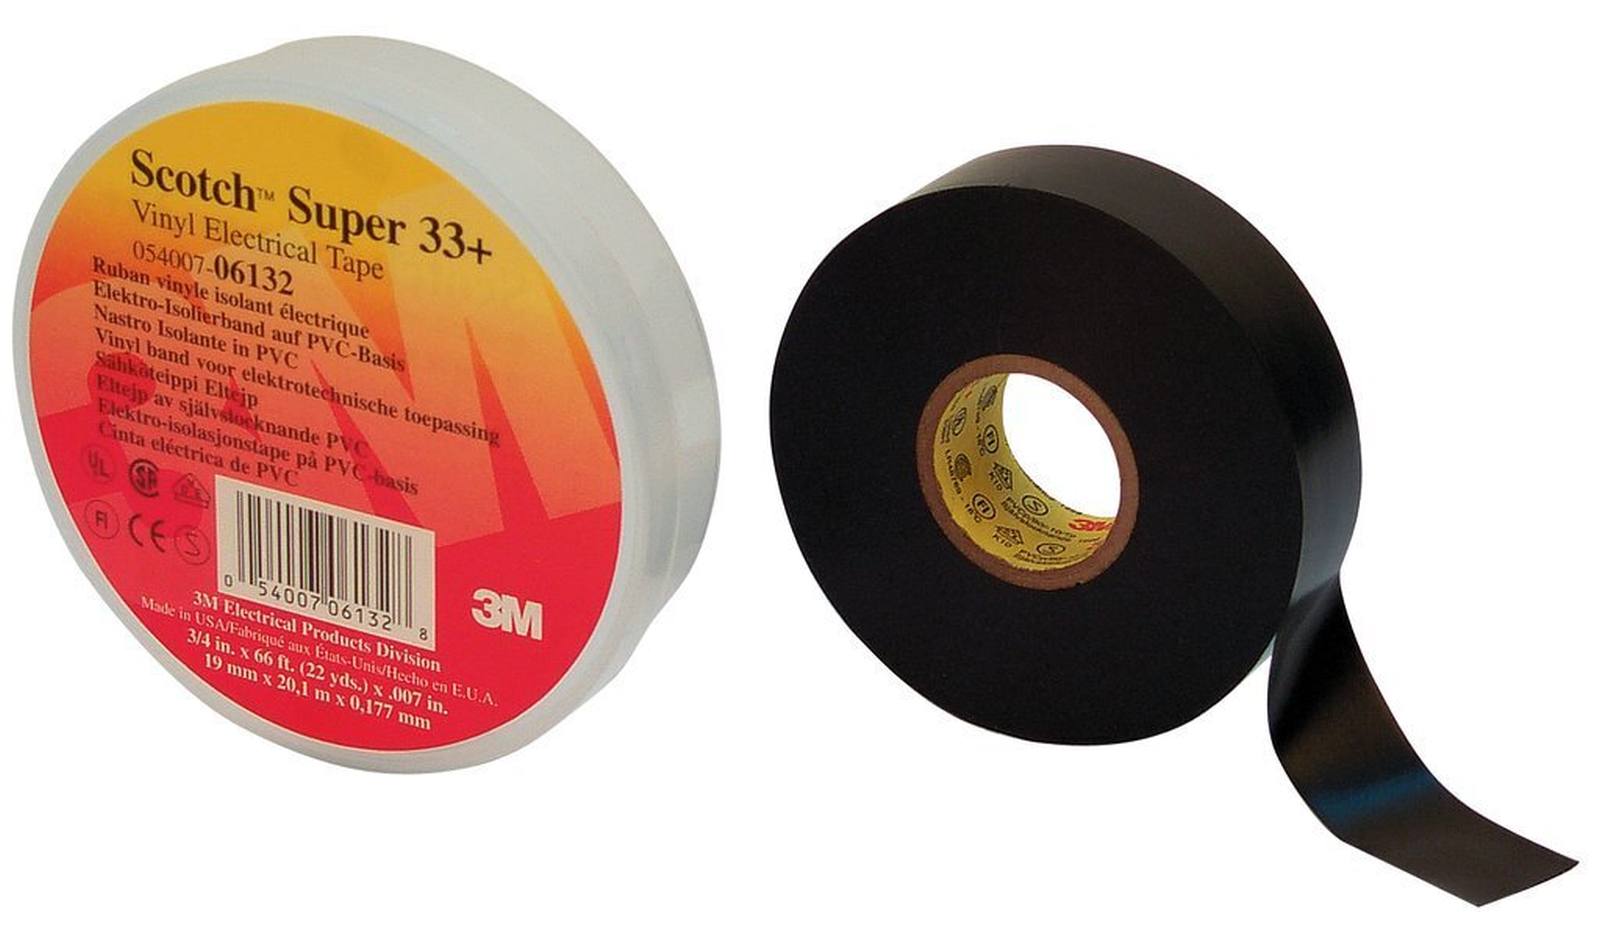 3M Ruban adhésif électrique vinyle Super 33+, noir, 25 mm x 33 m, 0,18 mm